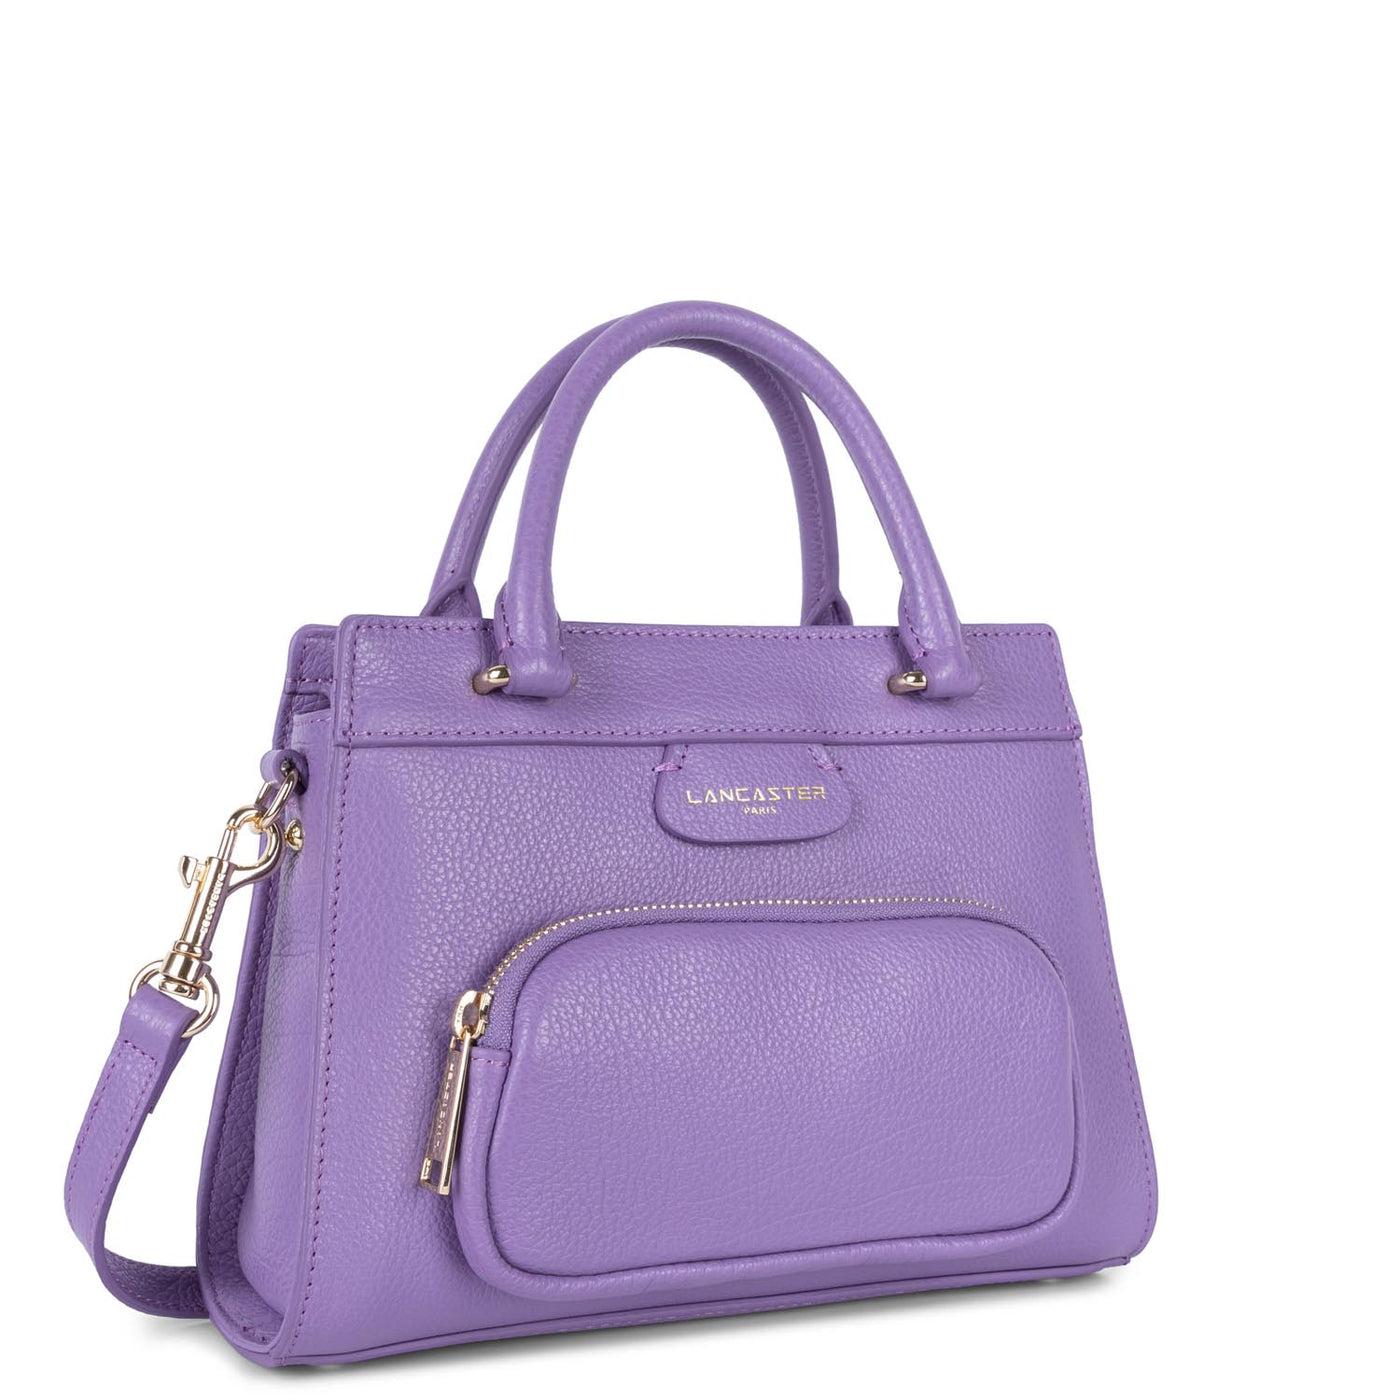 m handbag - dune #couleur_iris